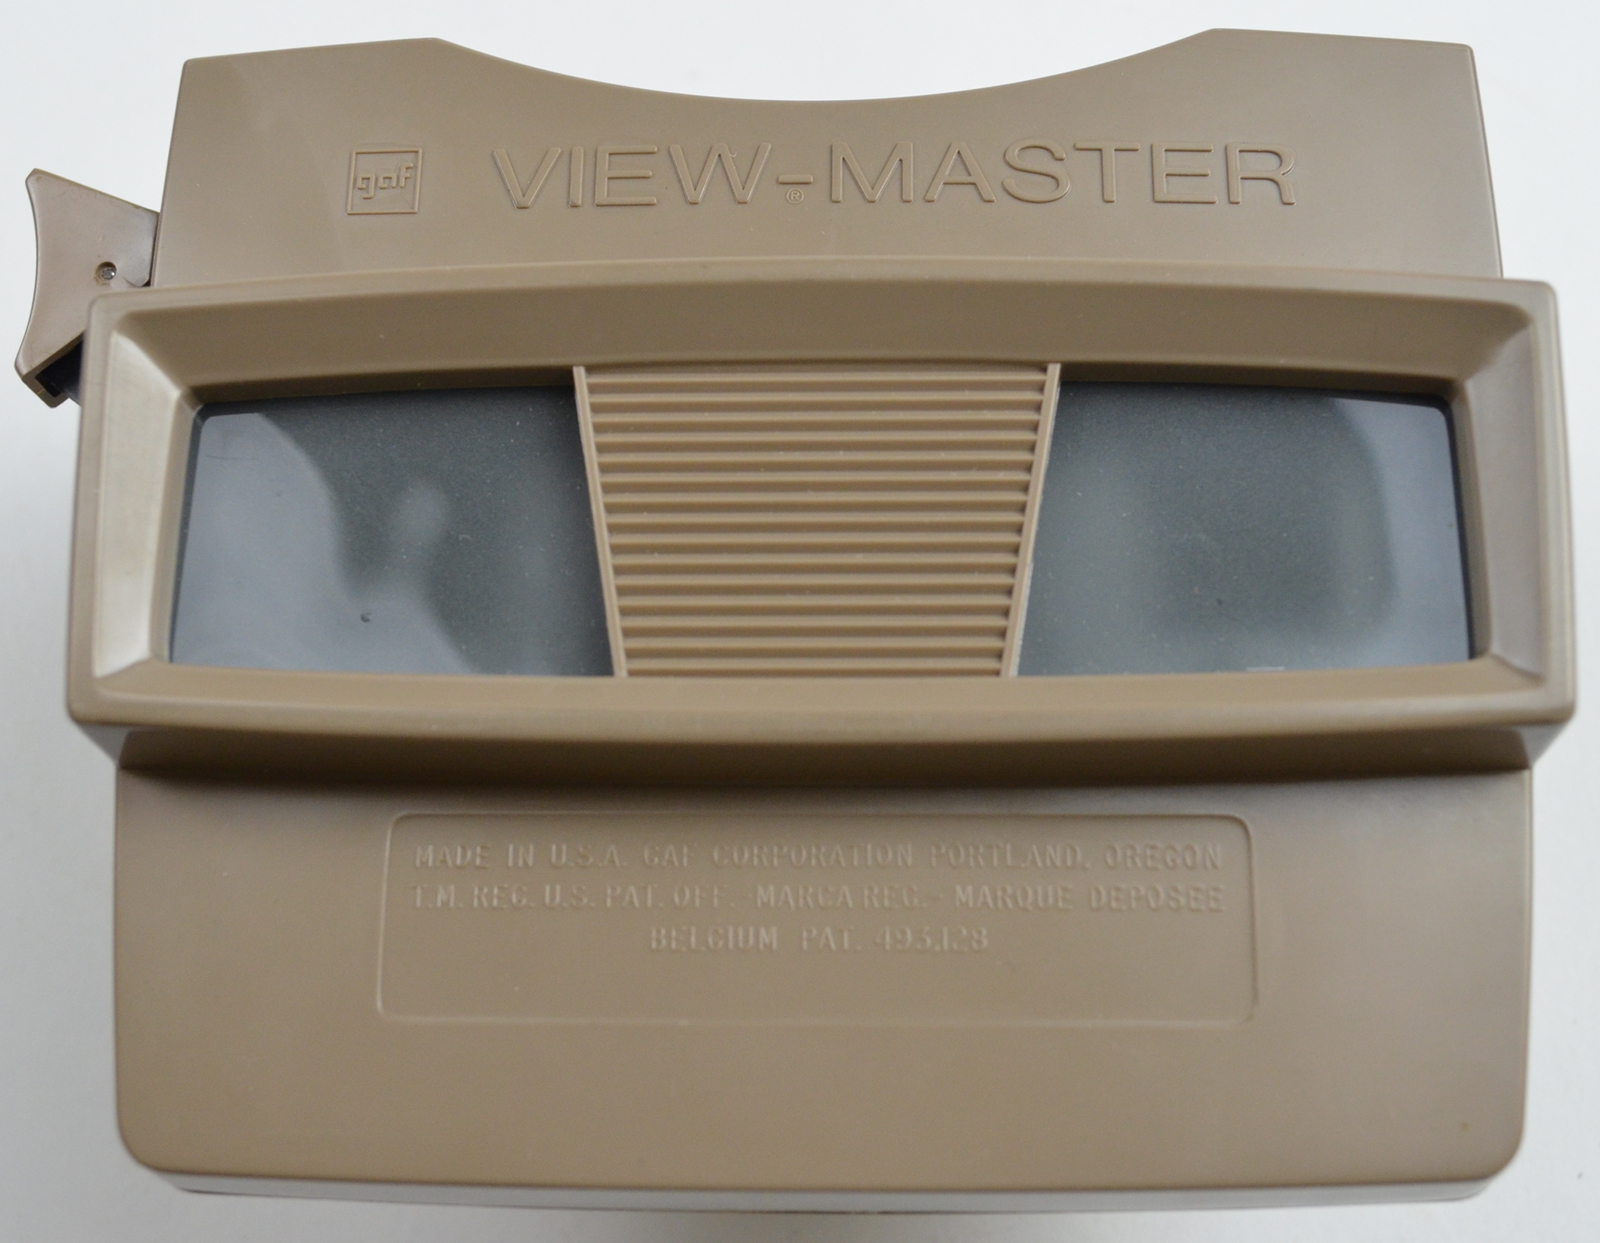 Viewmaster  Viewmaster Reels, View Master, Viewmaster Slides, Vintage